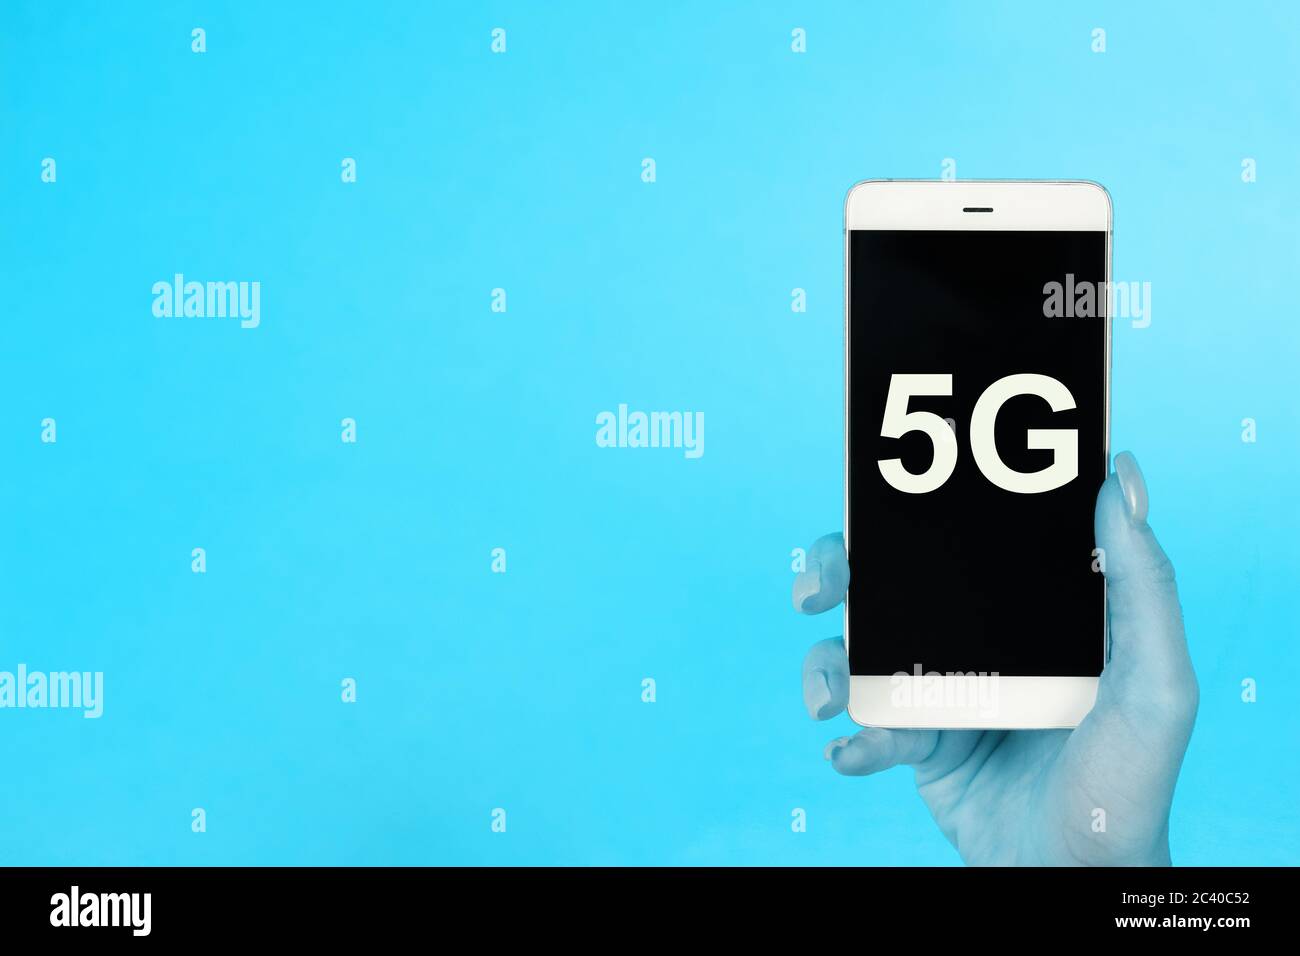 Arrière-plan créatif, main tenant un téléphone avec un symbole 5G. Le concept de réseau 5G, Internet mobile haut débit, réseaux de nouvelle génération Banque D'Images